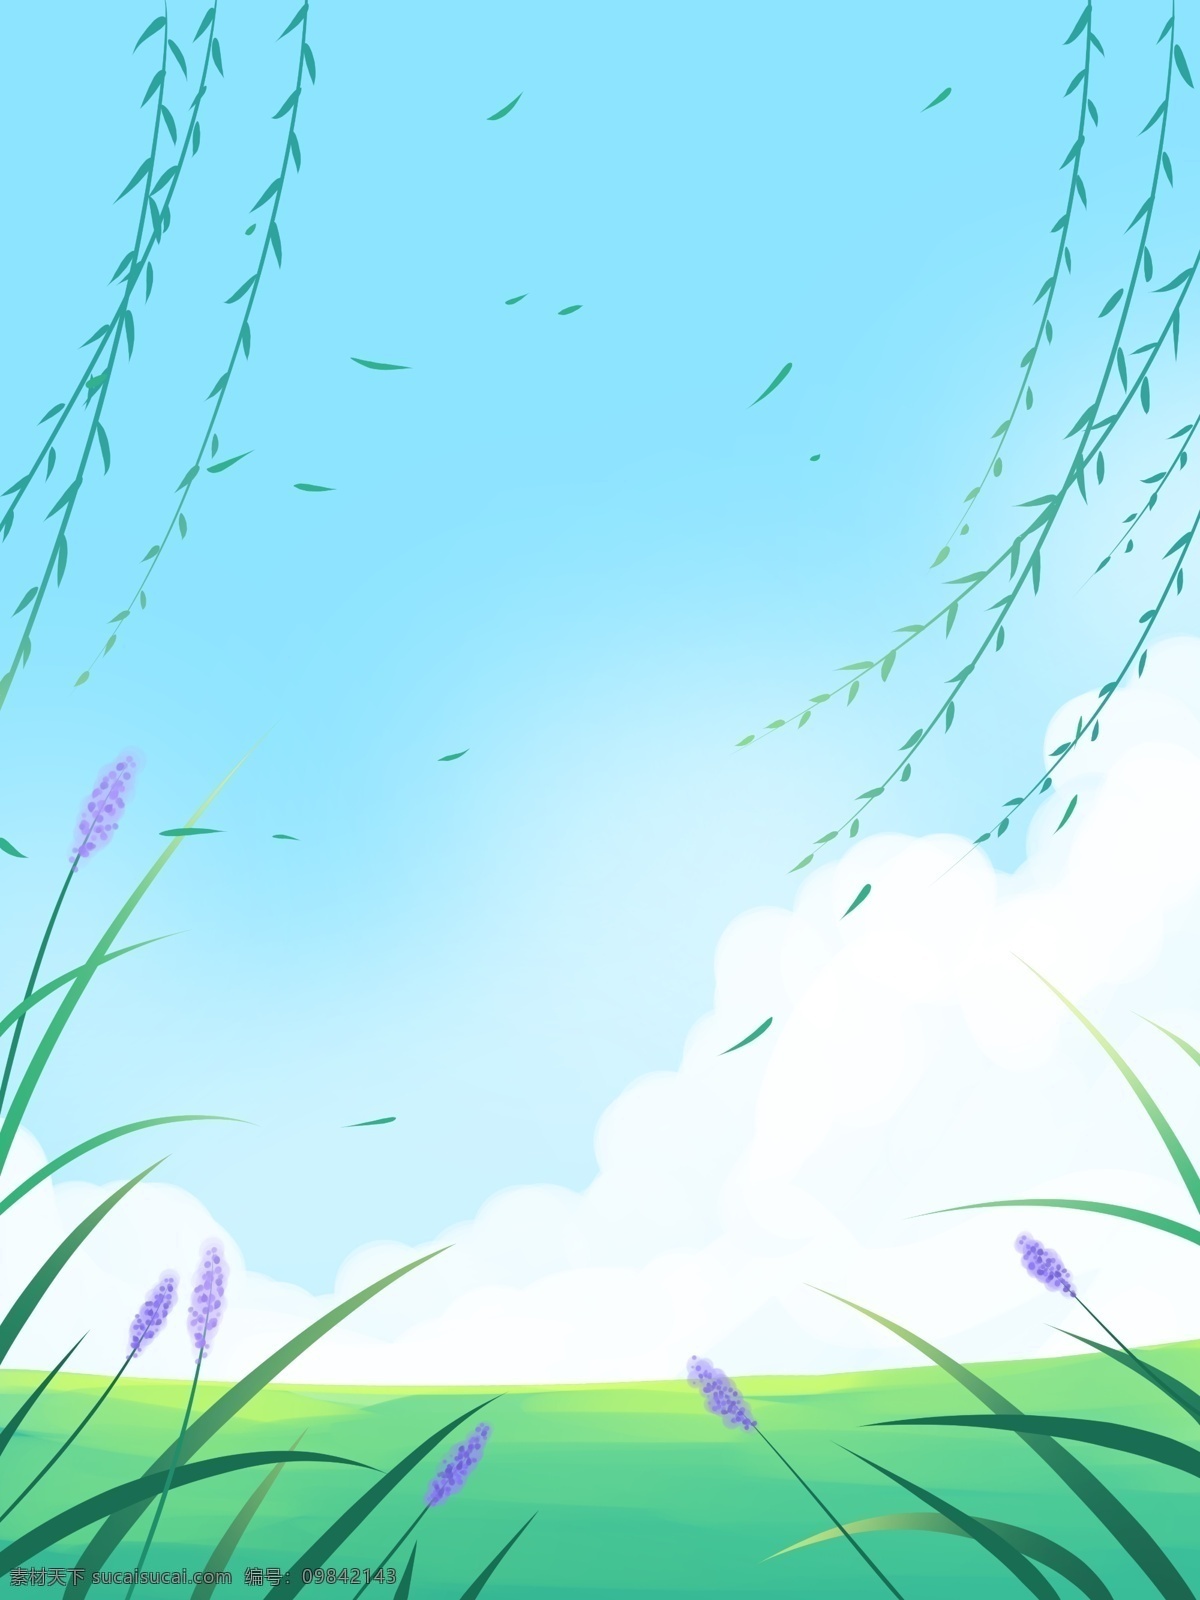 治愈 系 植物 树林 插画 背景 插画背景 植物背景 唯美 草地背景 绿地背景 蓝天白云 叶子